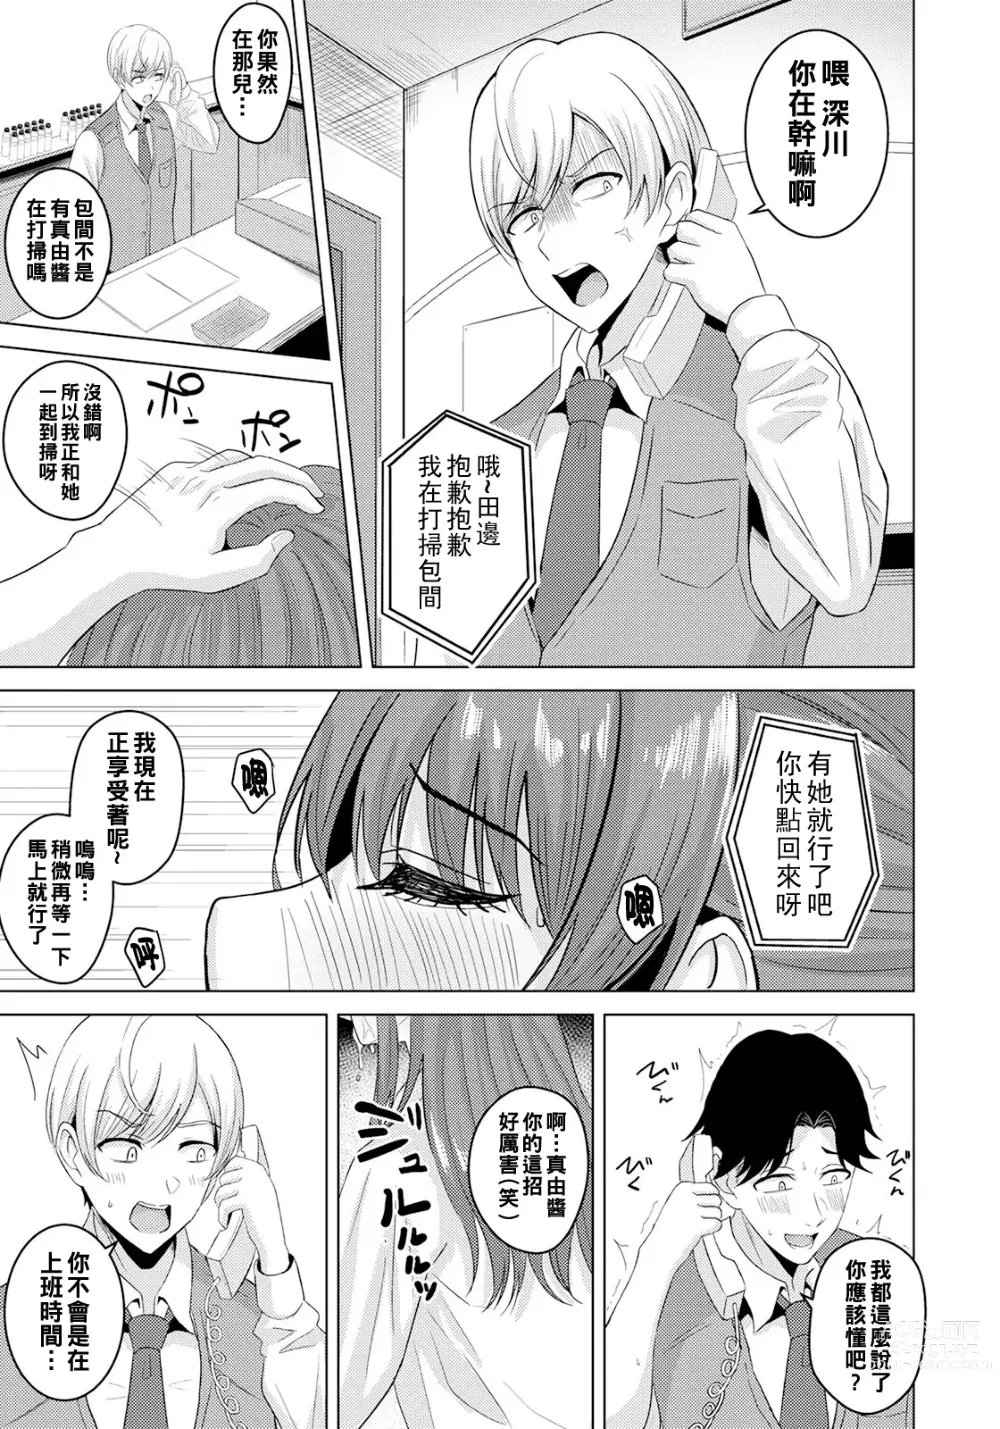 Page 7 of manga Ubai Ai no Sukima